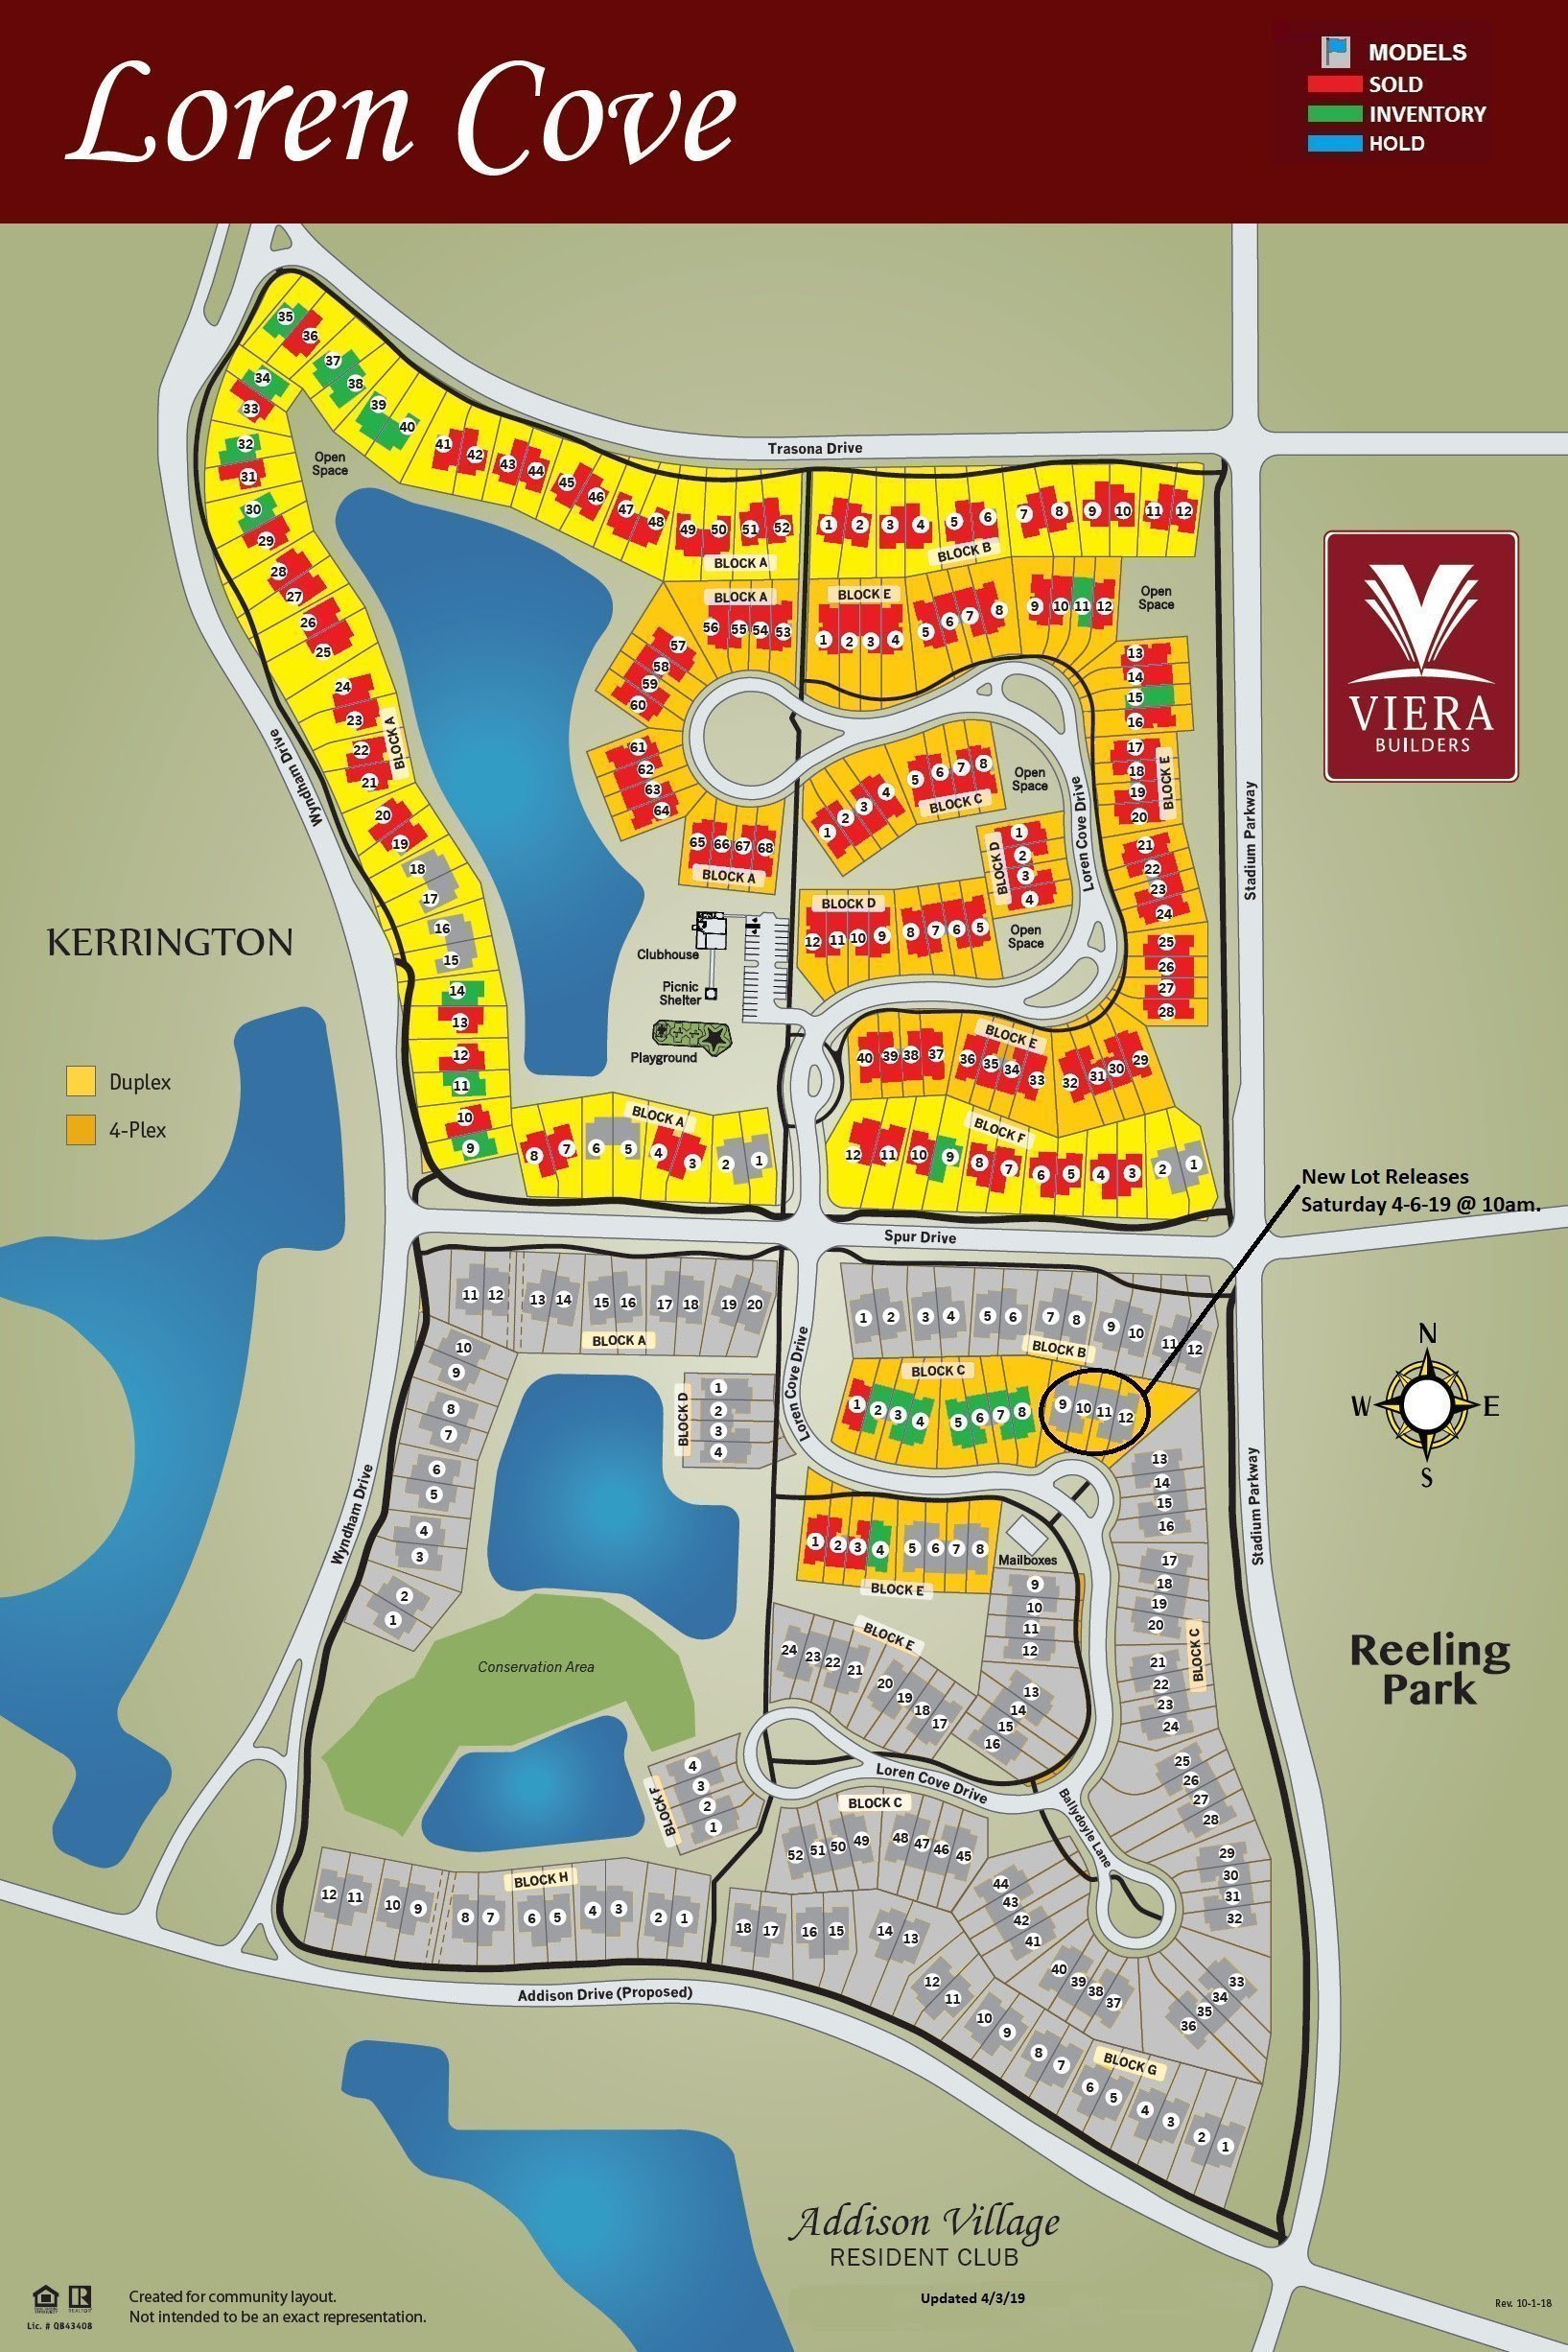 Loren Cove South Lot Release Map Viera FL 2019